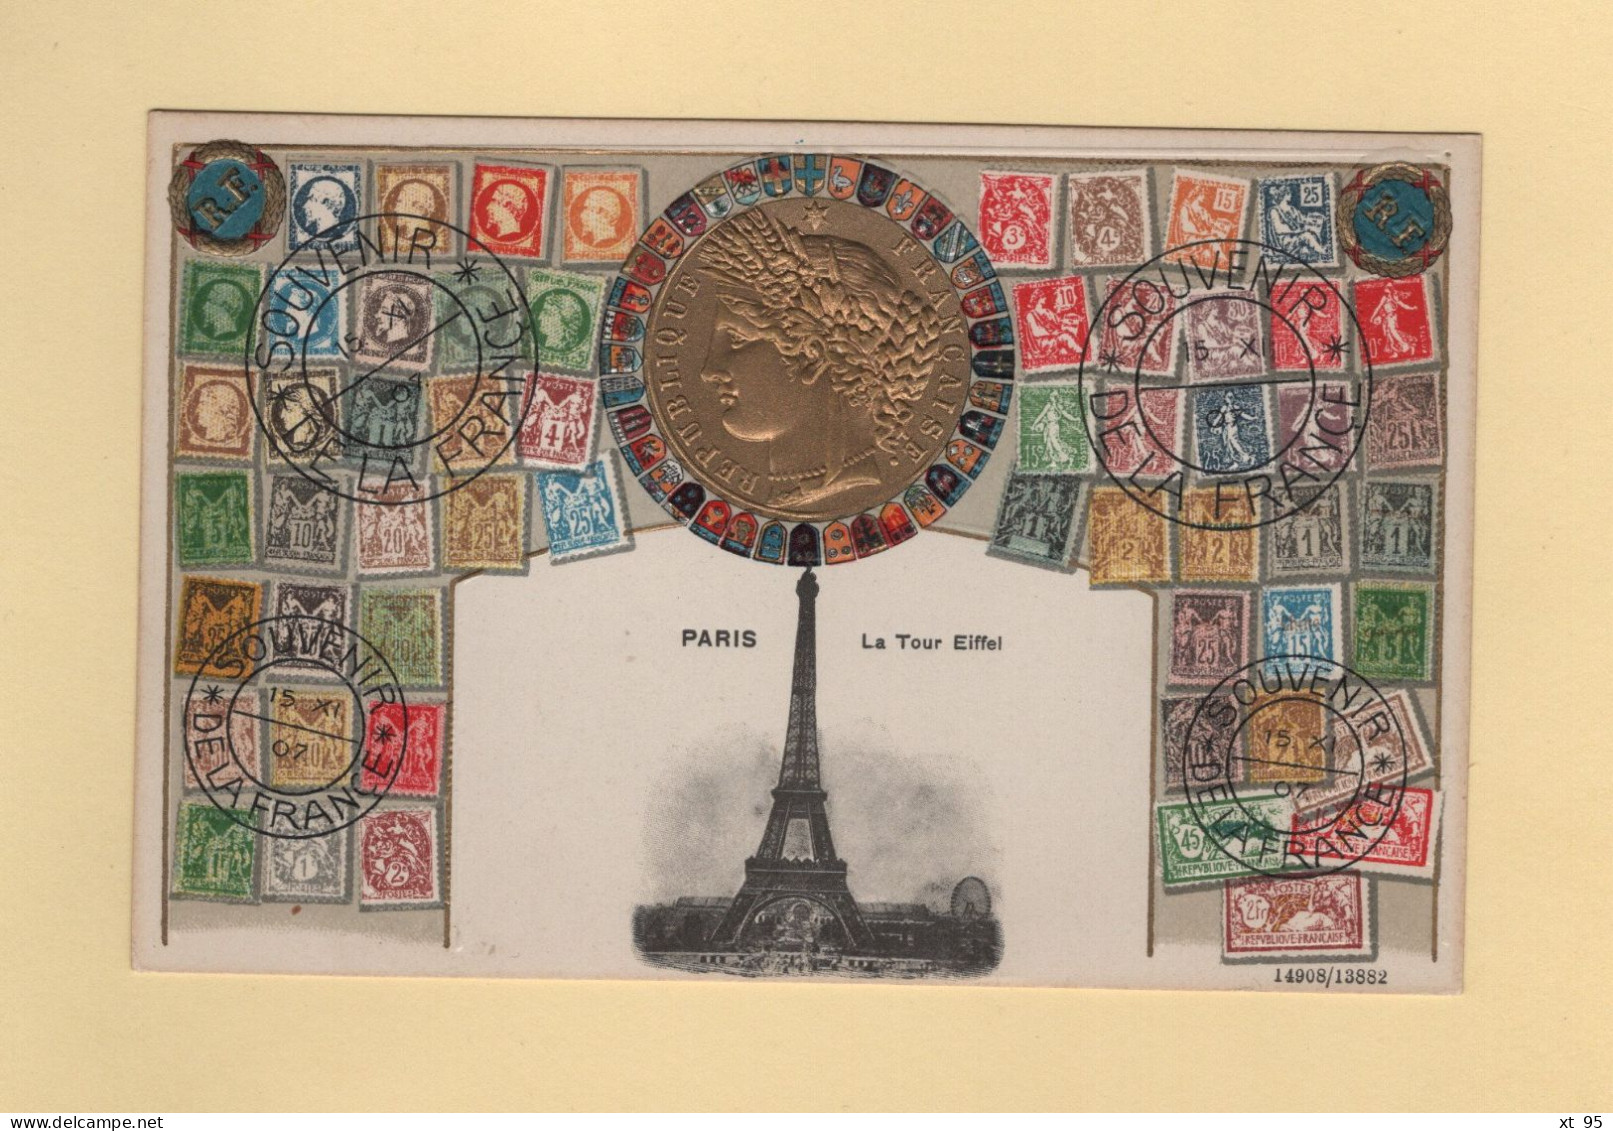 Timbres - Souvenir De La France - Paris - La Tour Eiffel - Carte Gauffree - Stamps (pictures)